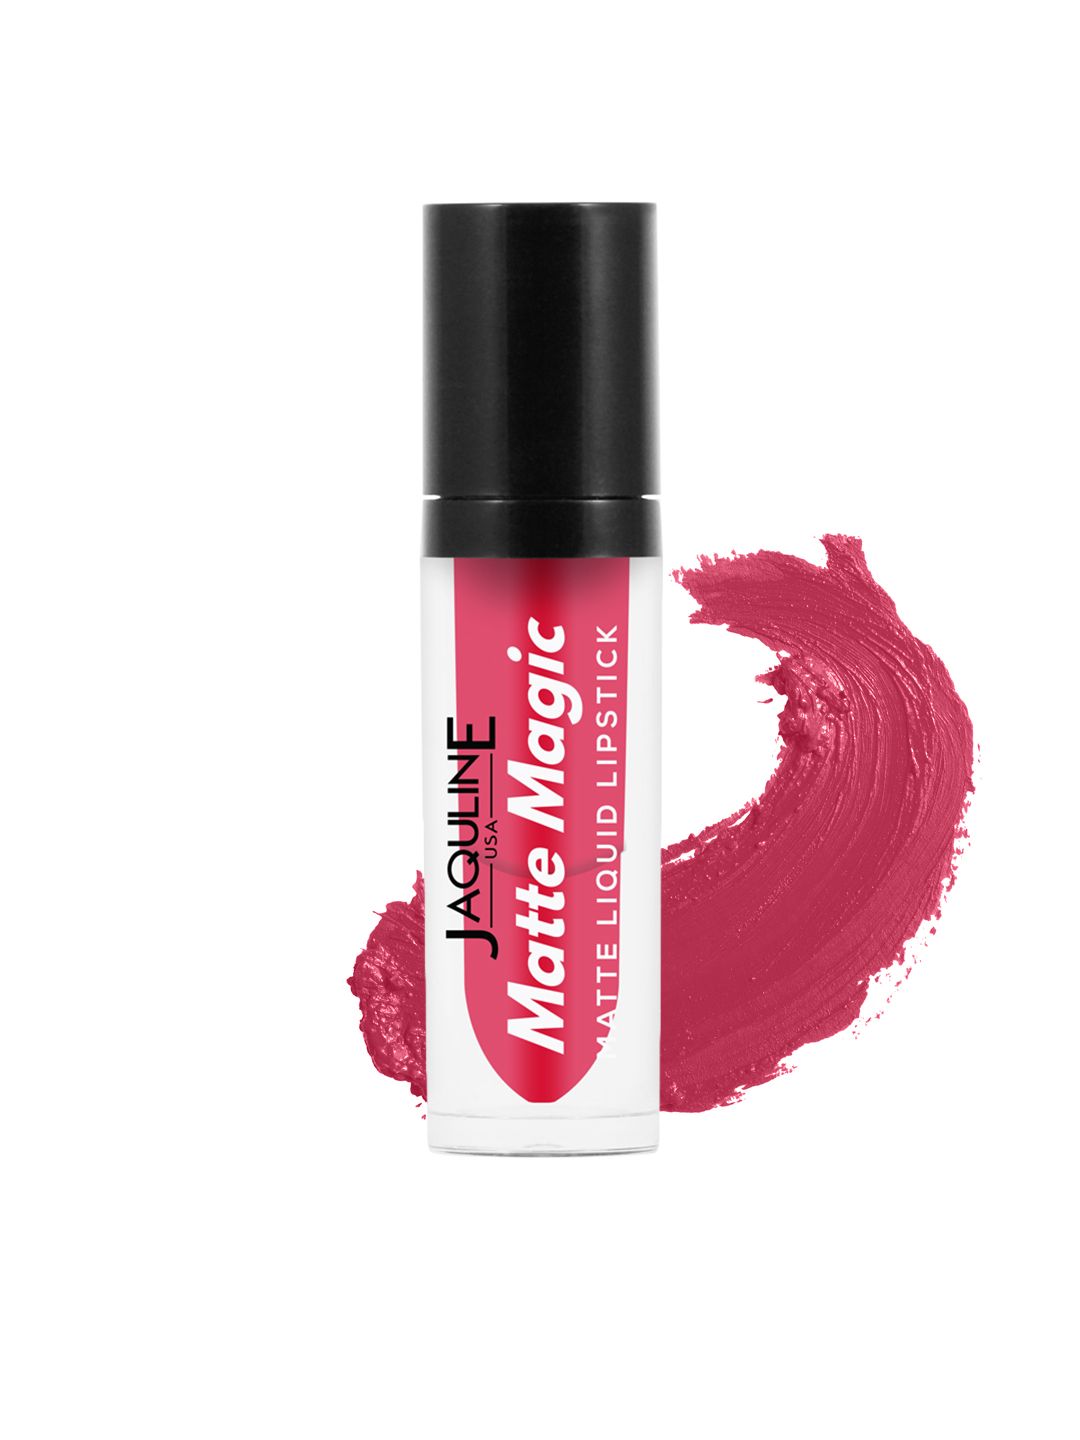 Jaquline USA Flowerchild Matte Magic Liquid Lipstick 06 Price in India